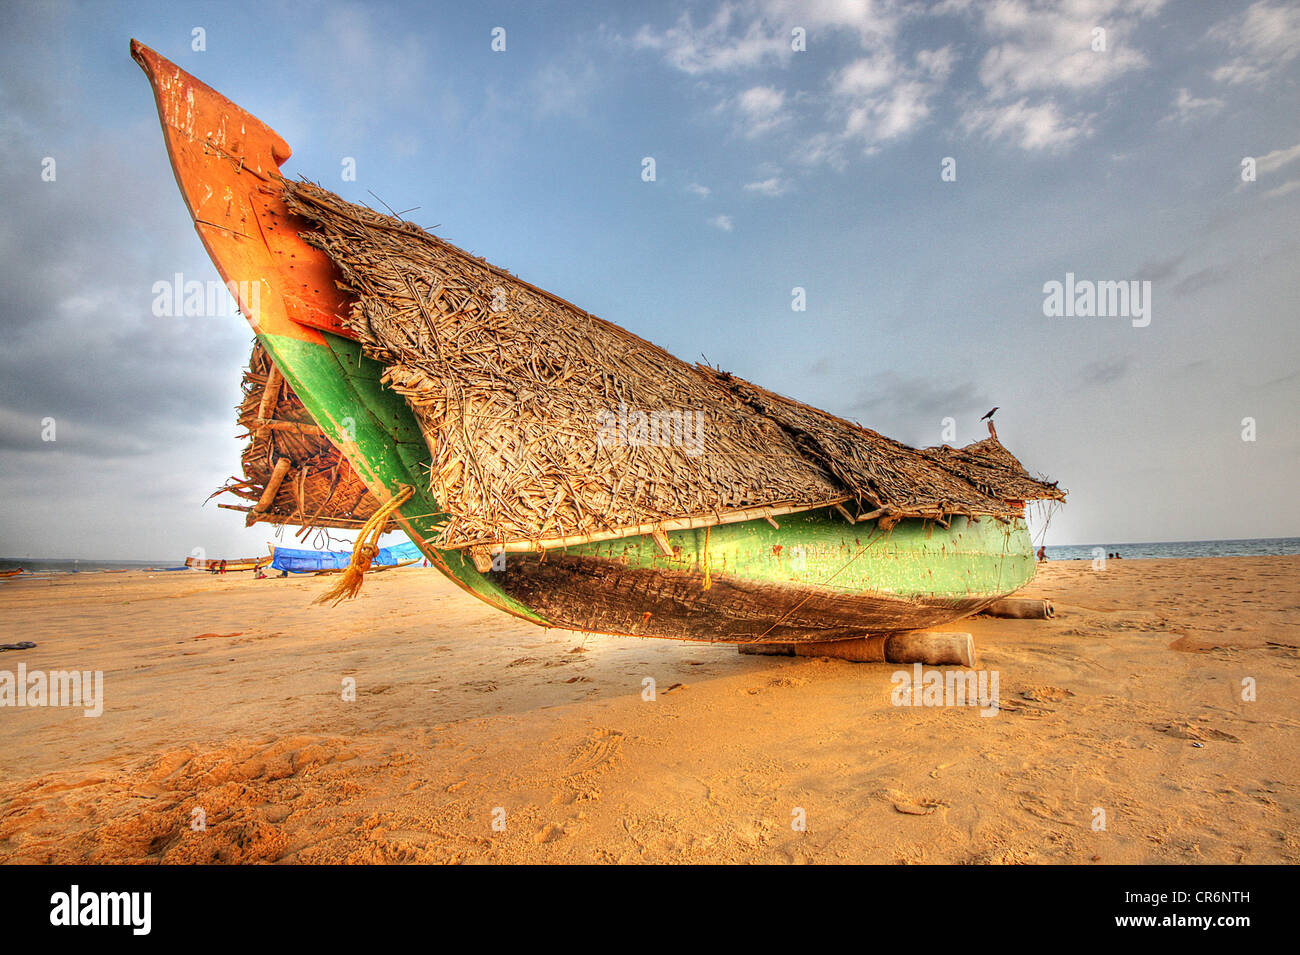 Kerala fishing boat on Kovalam beach, Kerala, India Stock Photo